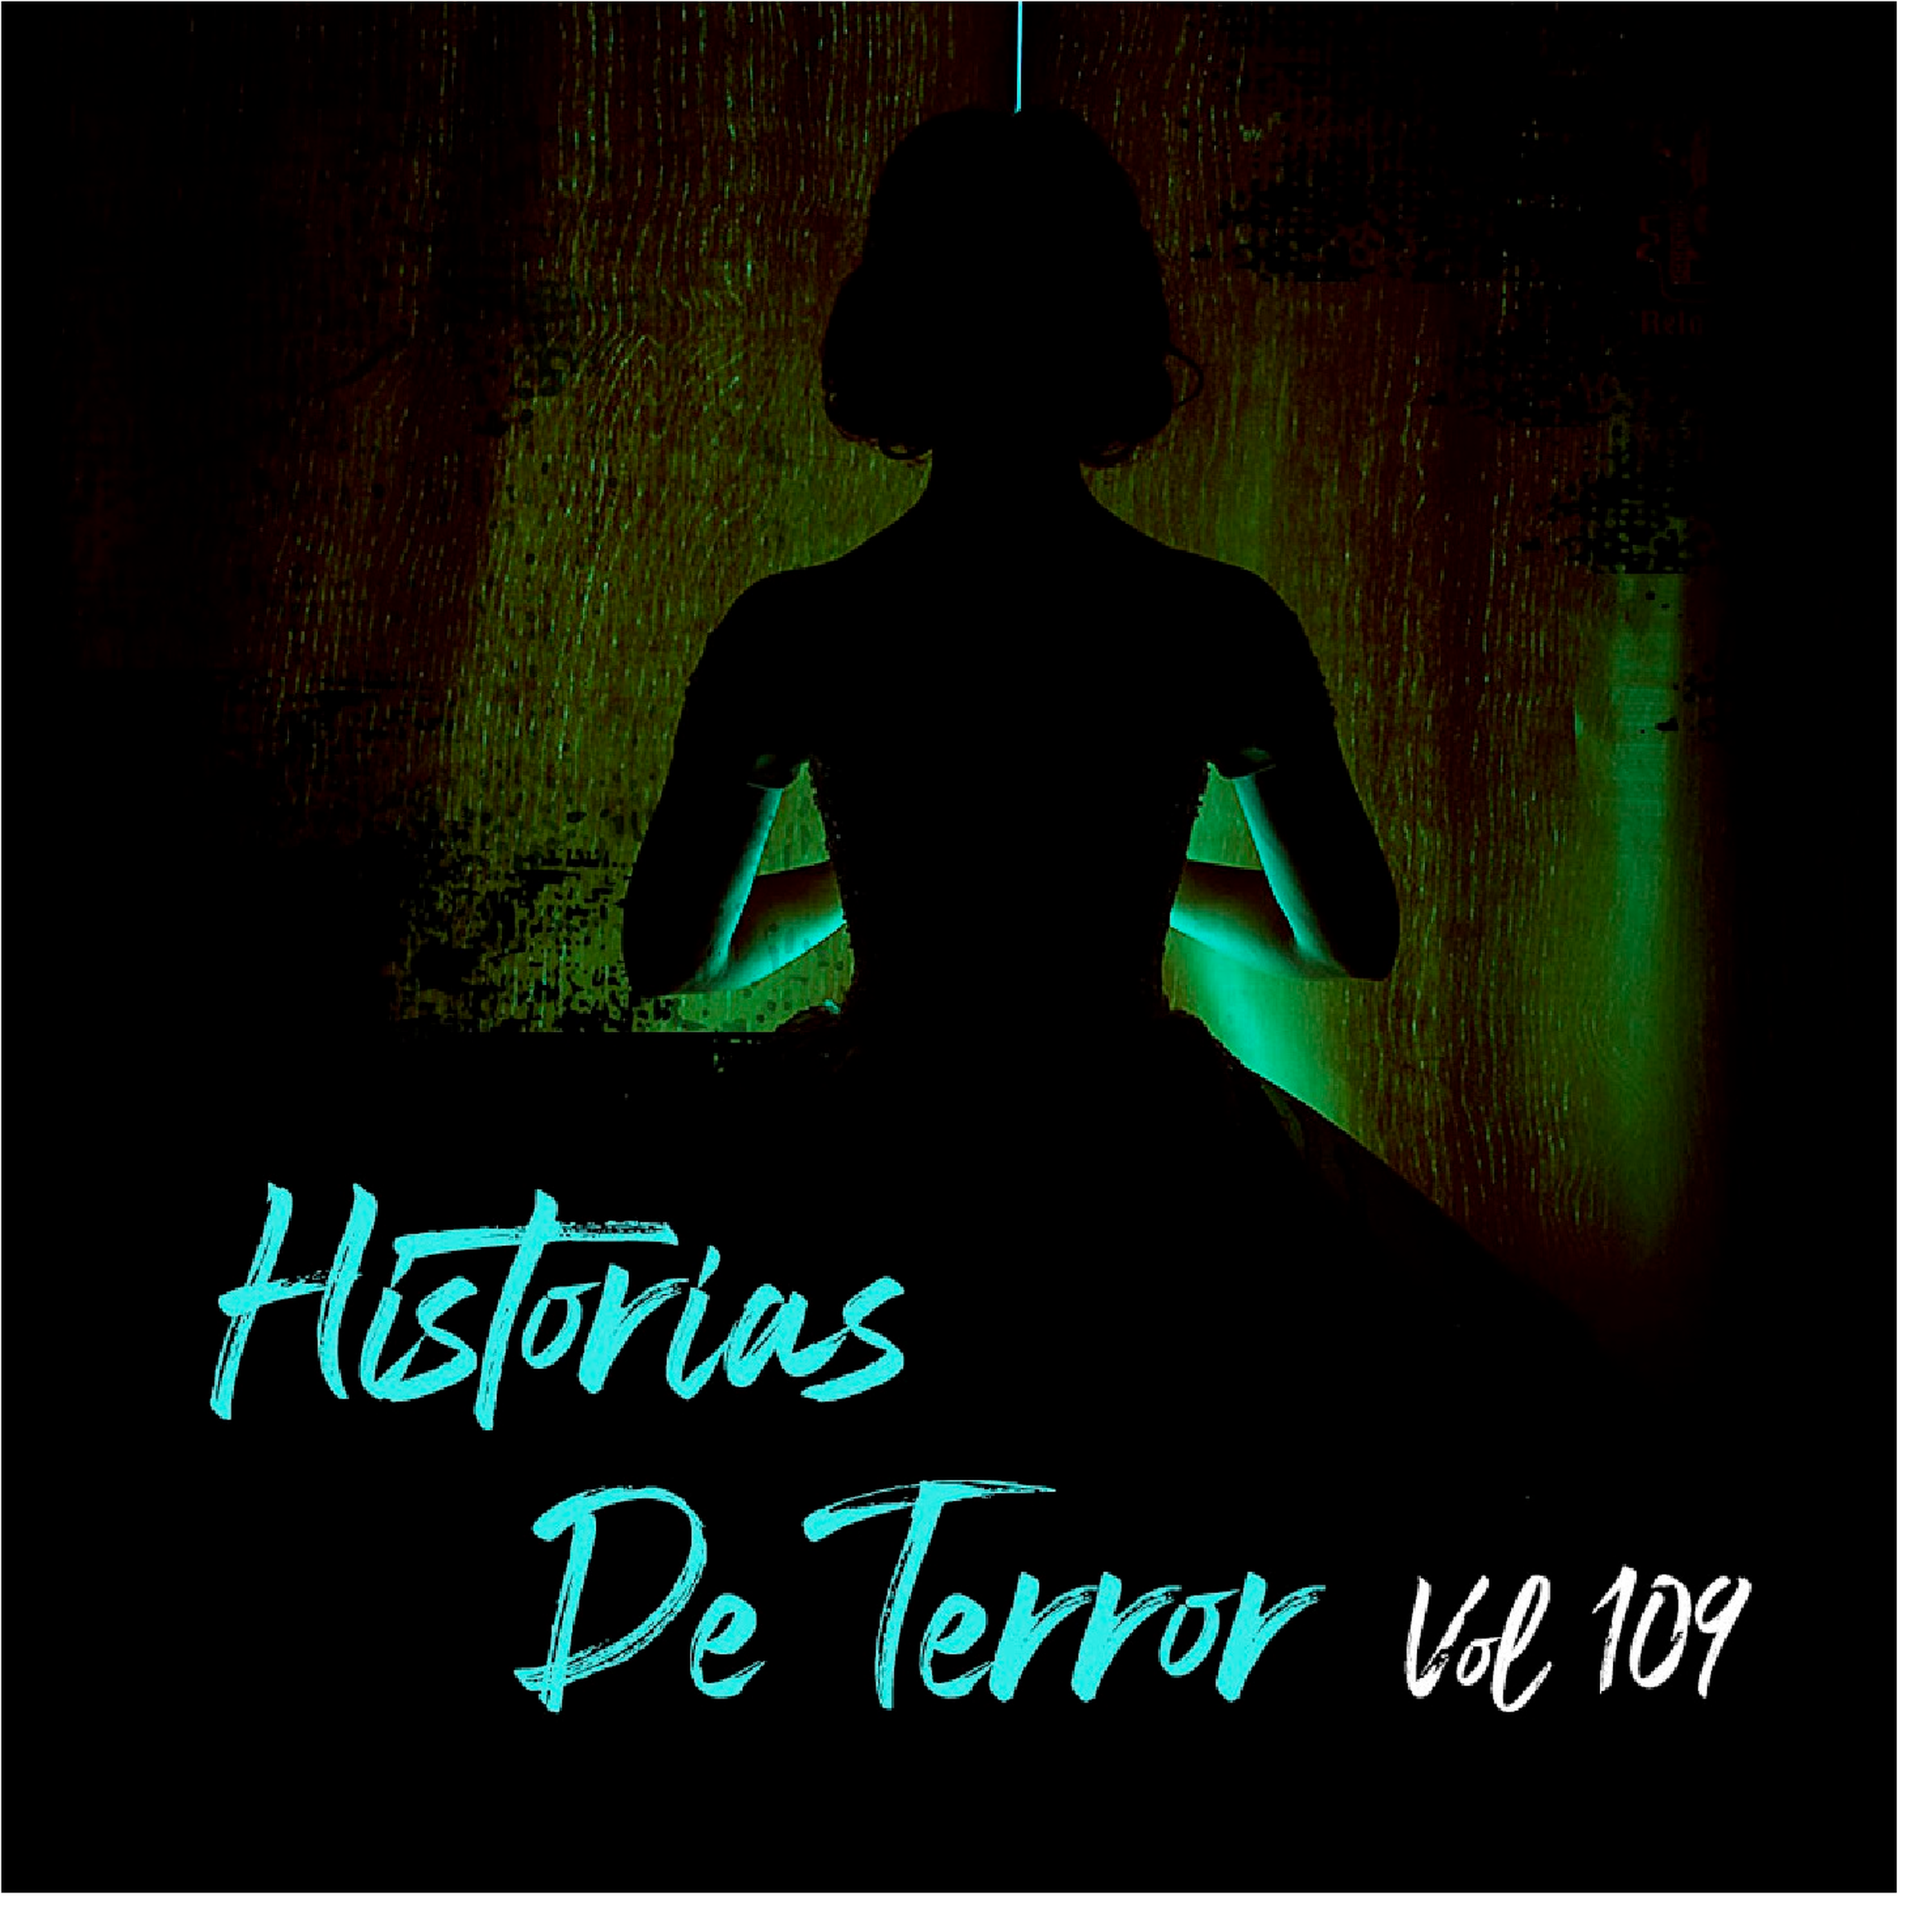 Historias De Terror Vol 109 Relatos De Horror Relatos De Horror Historias De Terror 2114